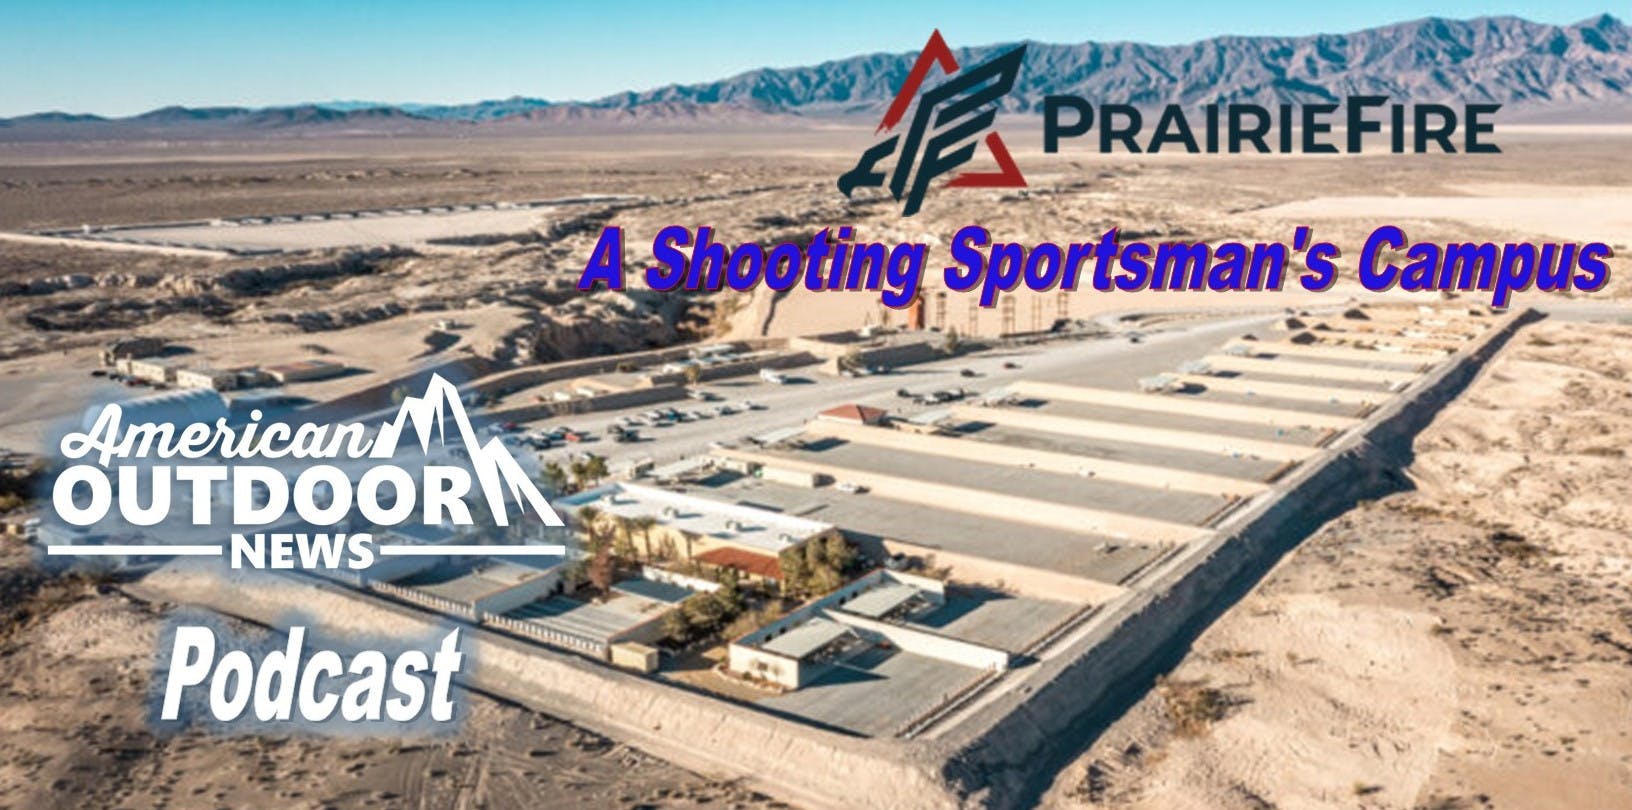 PrairieFire - A Shooting Sportsmans Campus